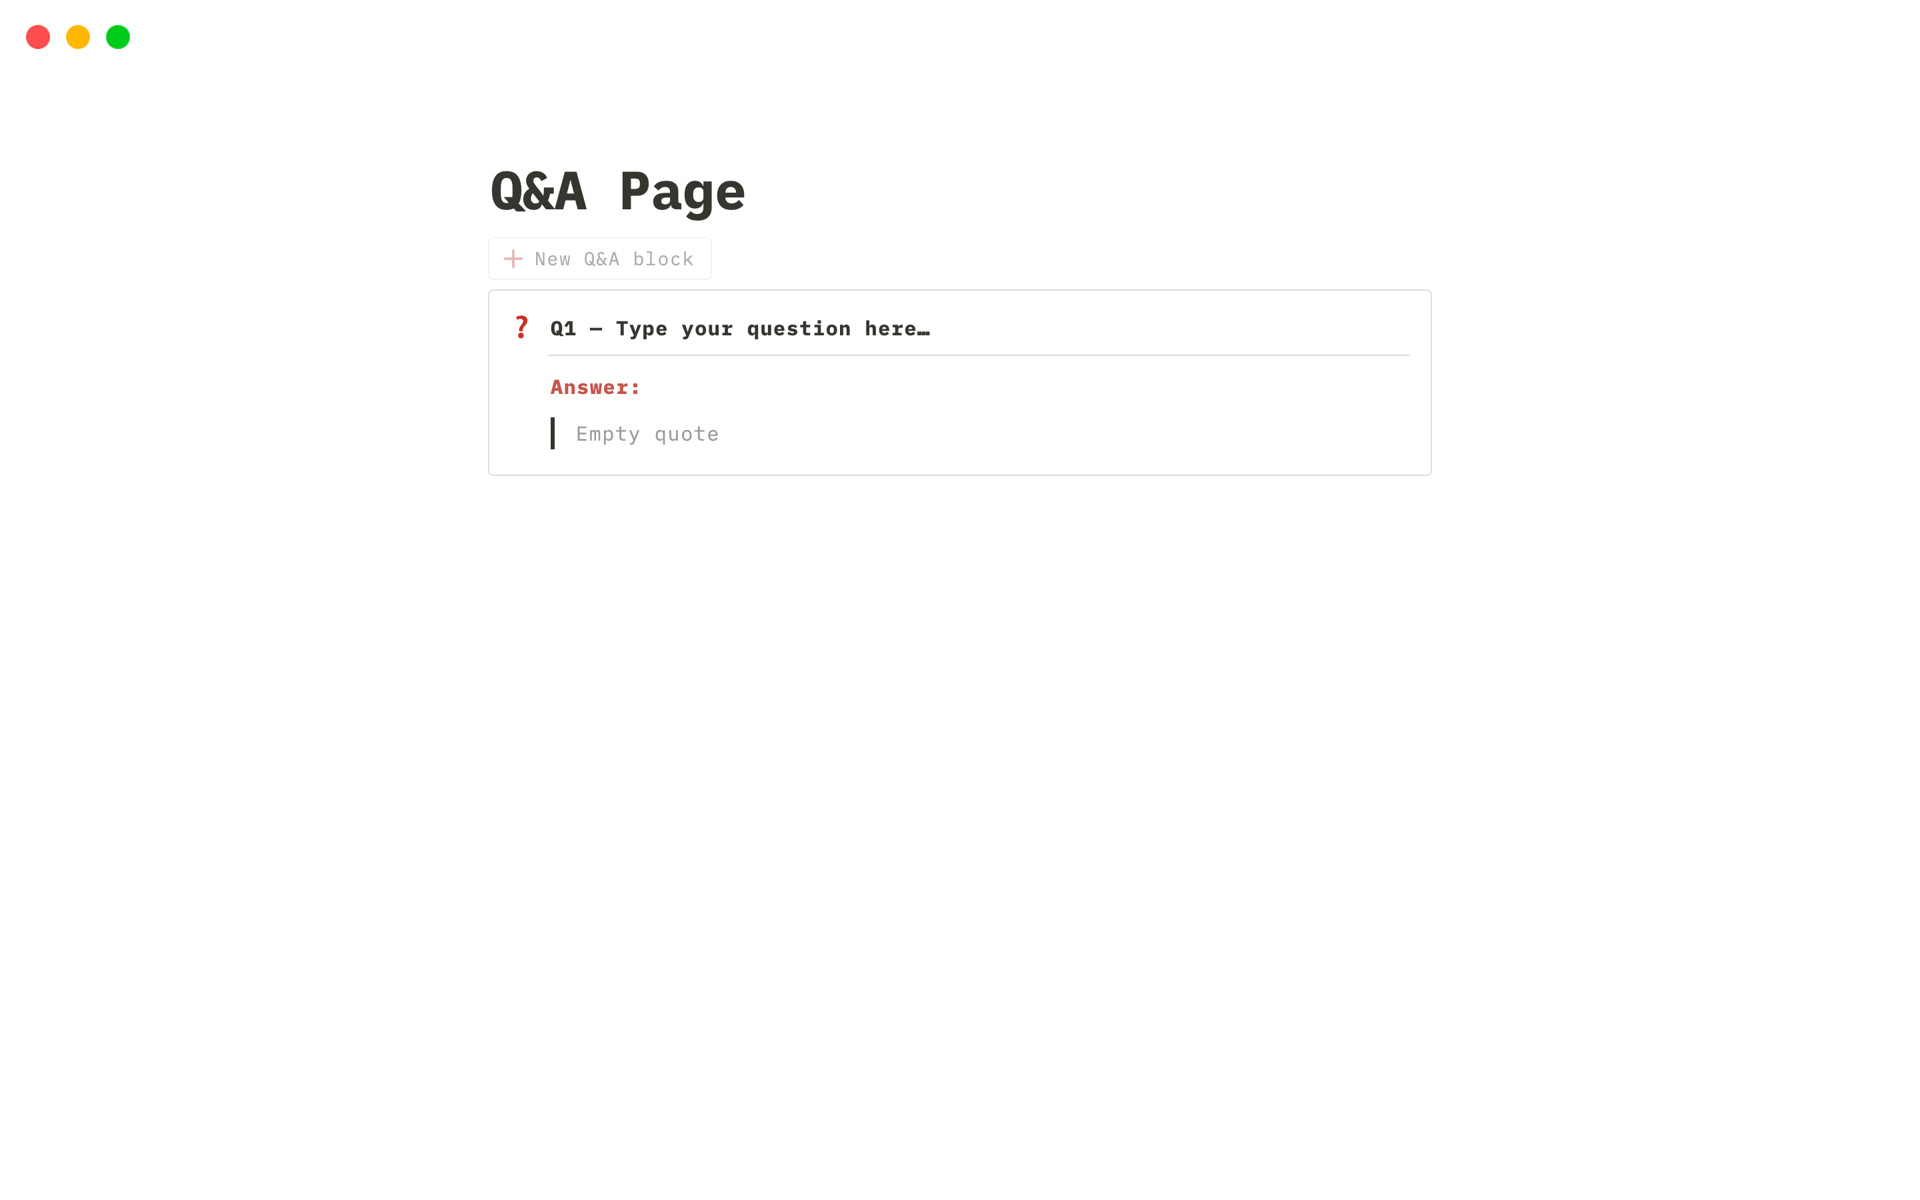 Aperçu du modèle de Q&A Page